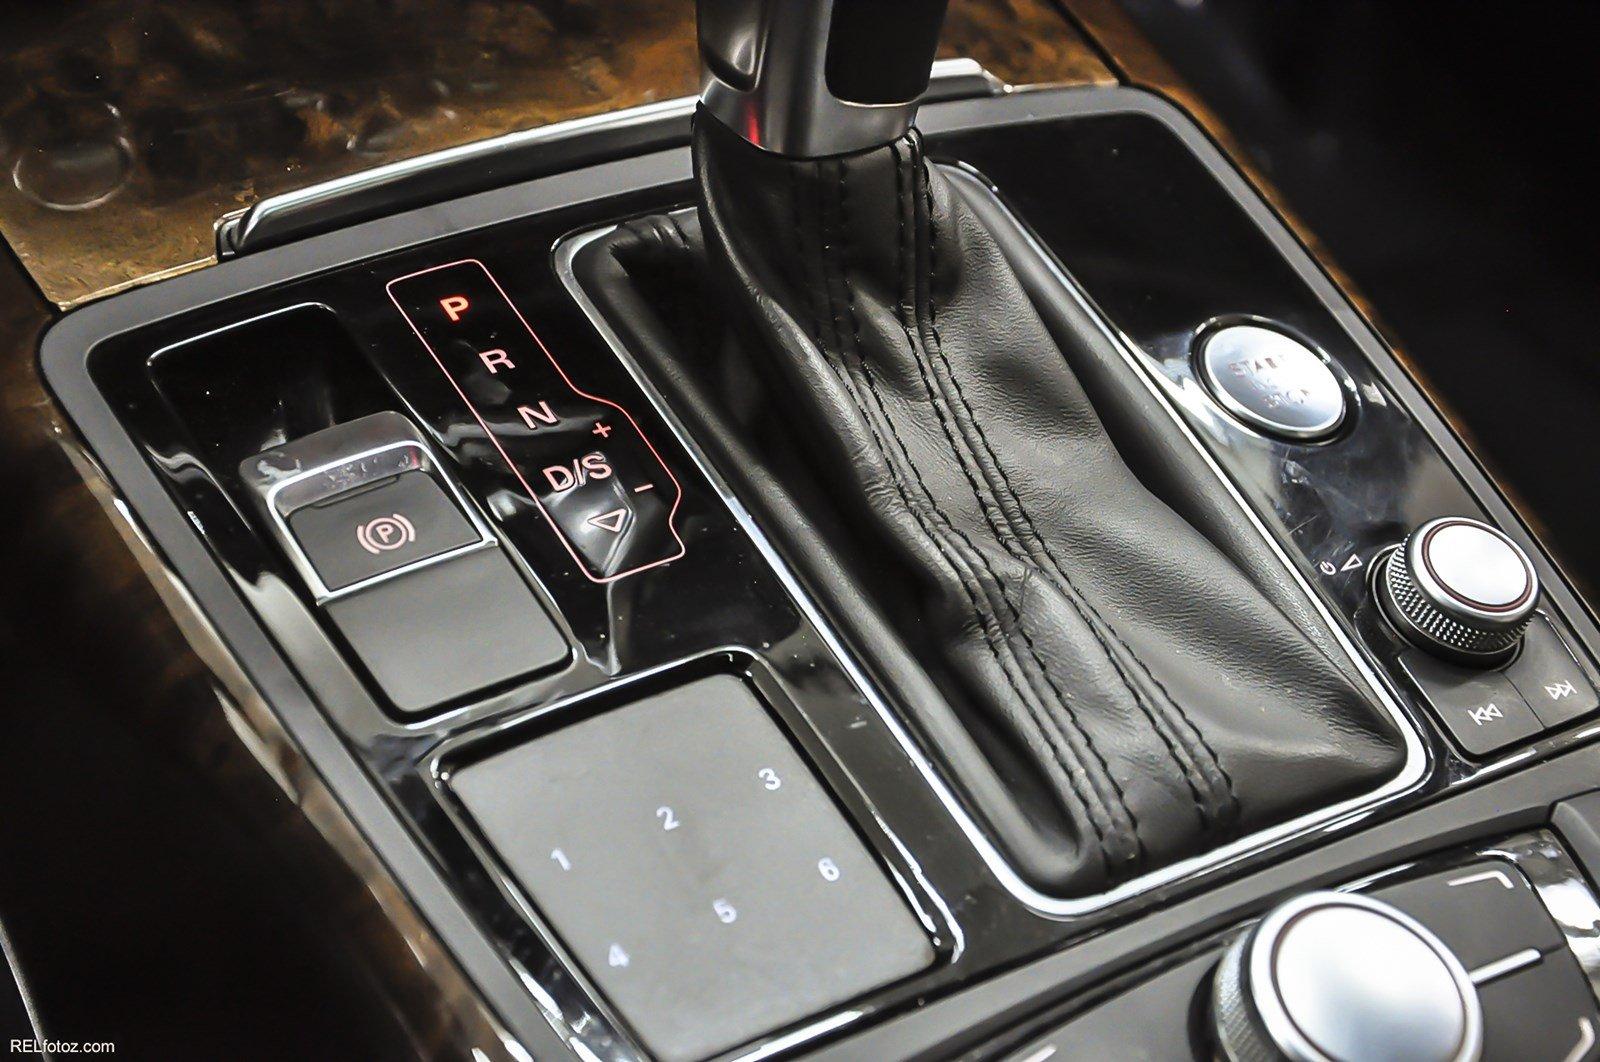 Used 2014 Audi A7 3.0 Premium Plus for sale Sold at Gravity Autos Marietta in Marietta GA 30060 14